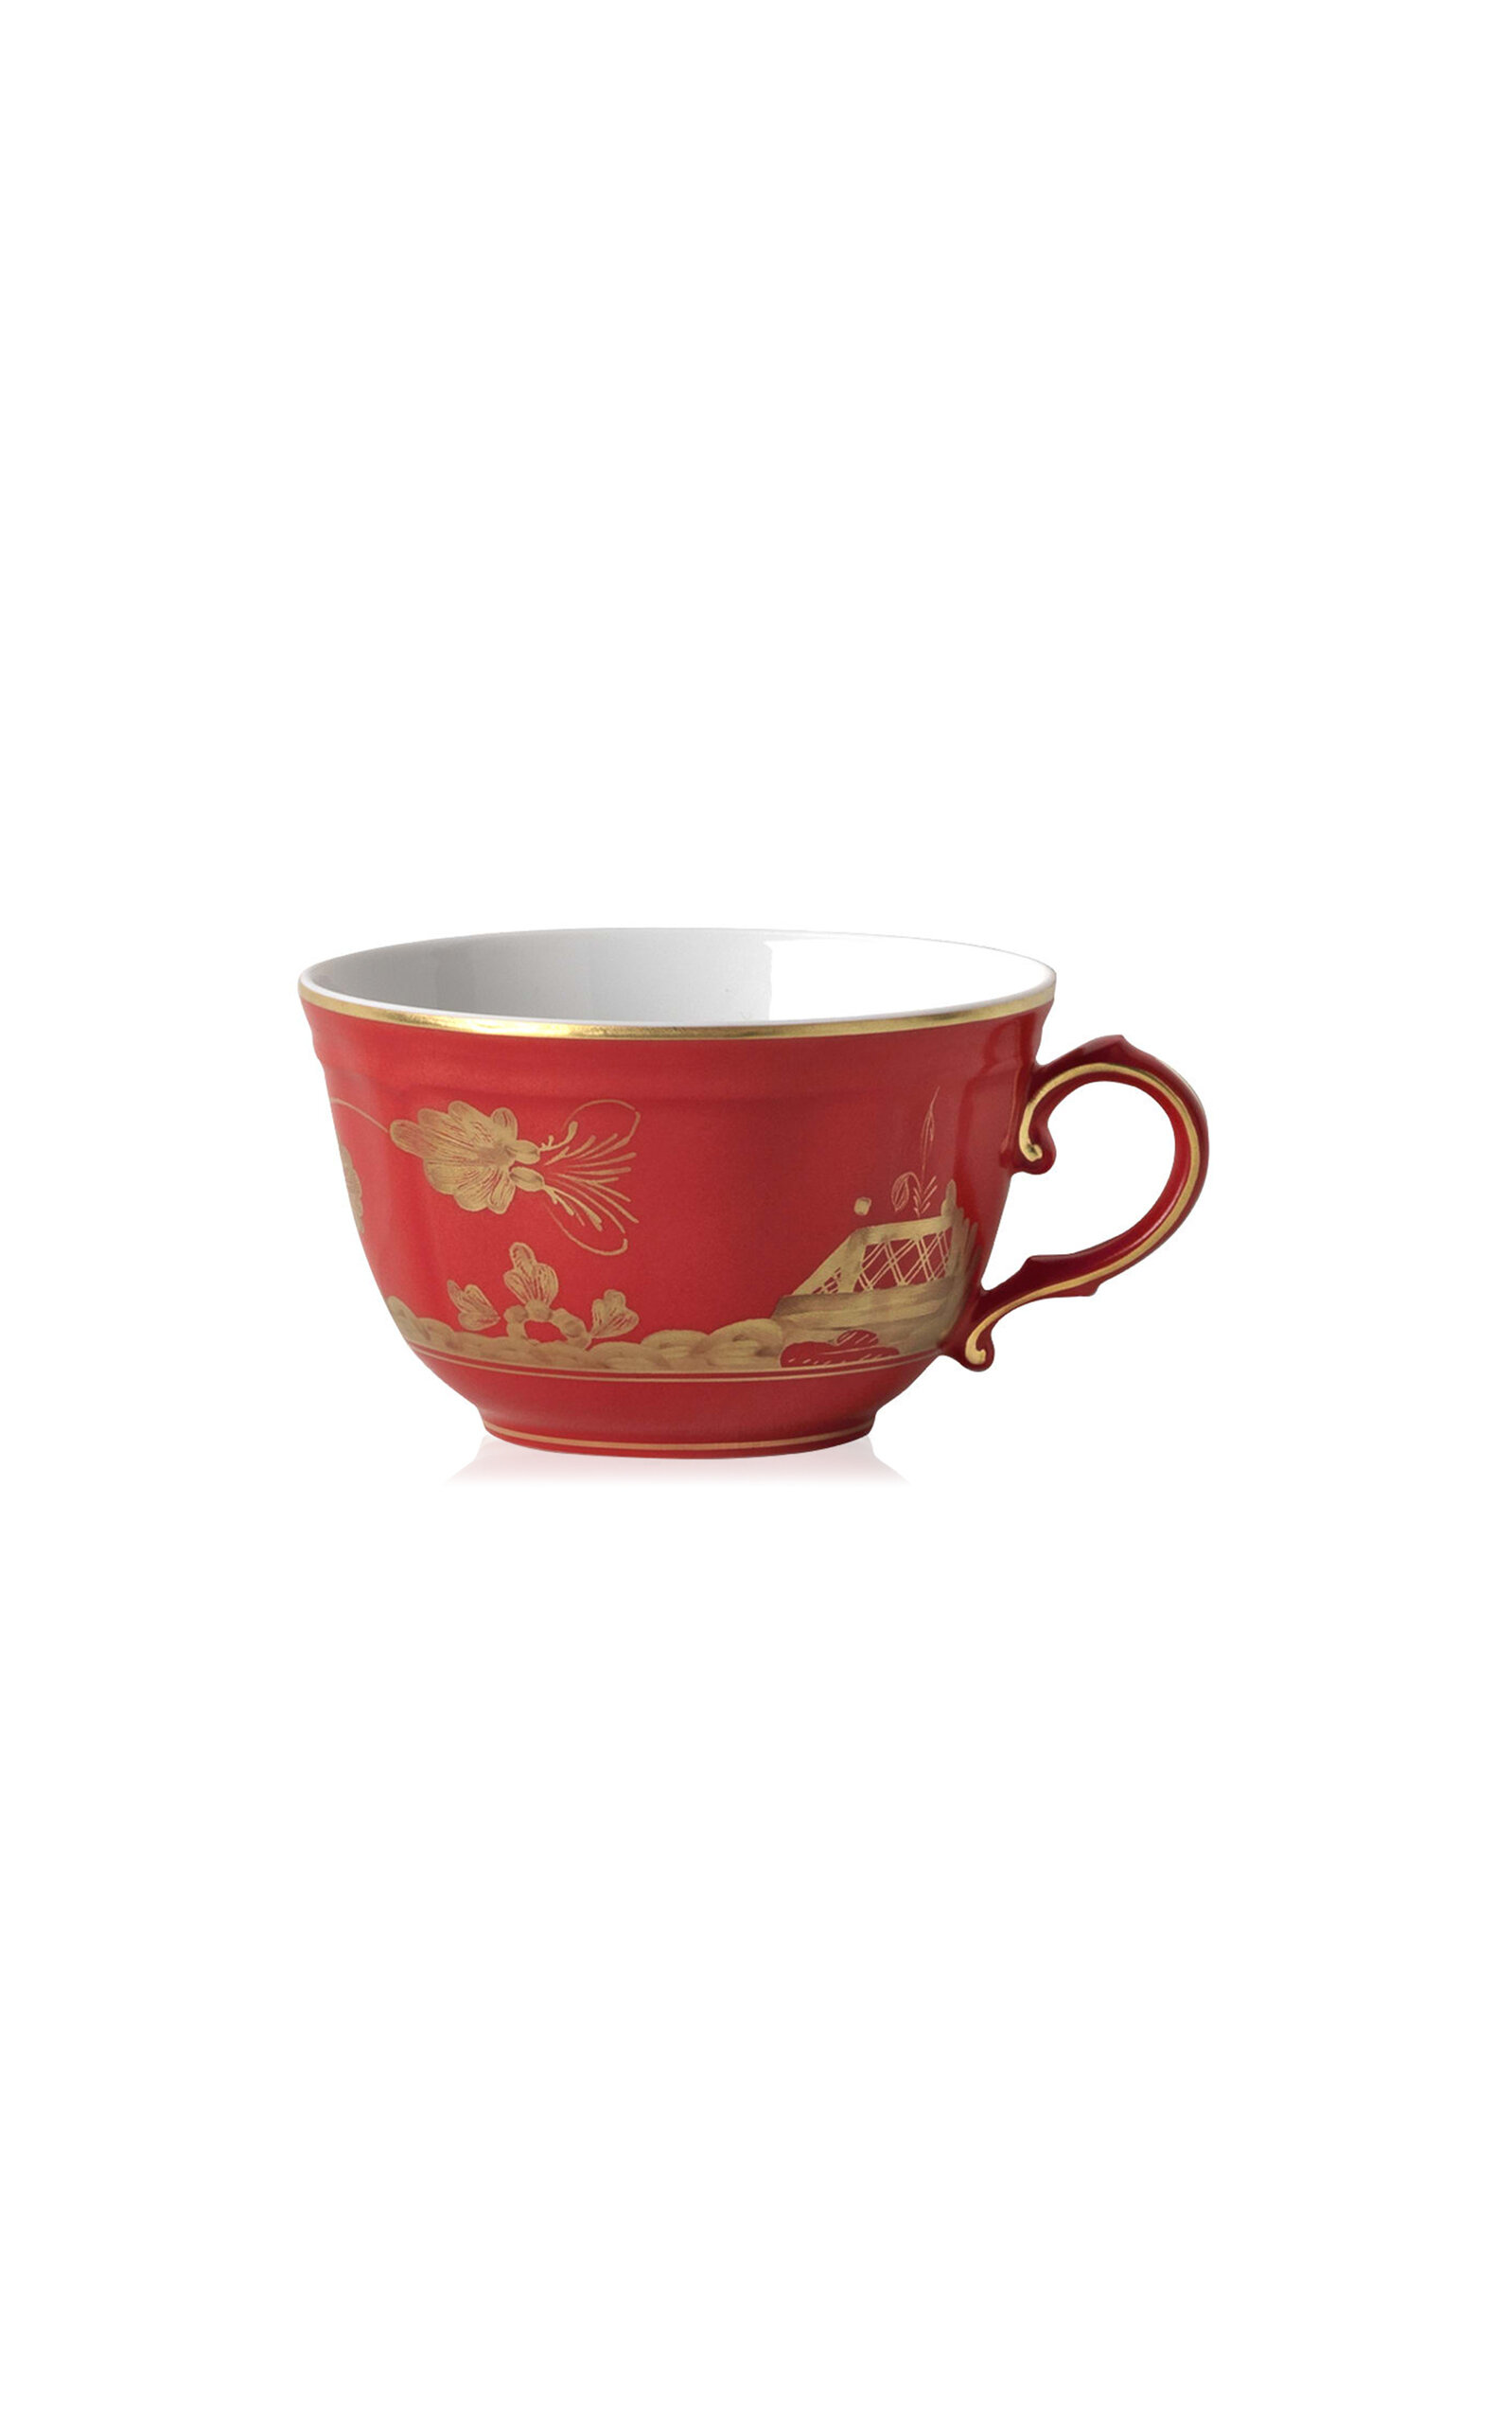 Ginori 1735 Antico Doccia Porcelain Tea Cup In Red